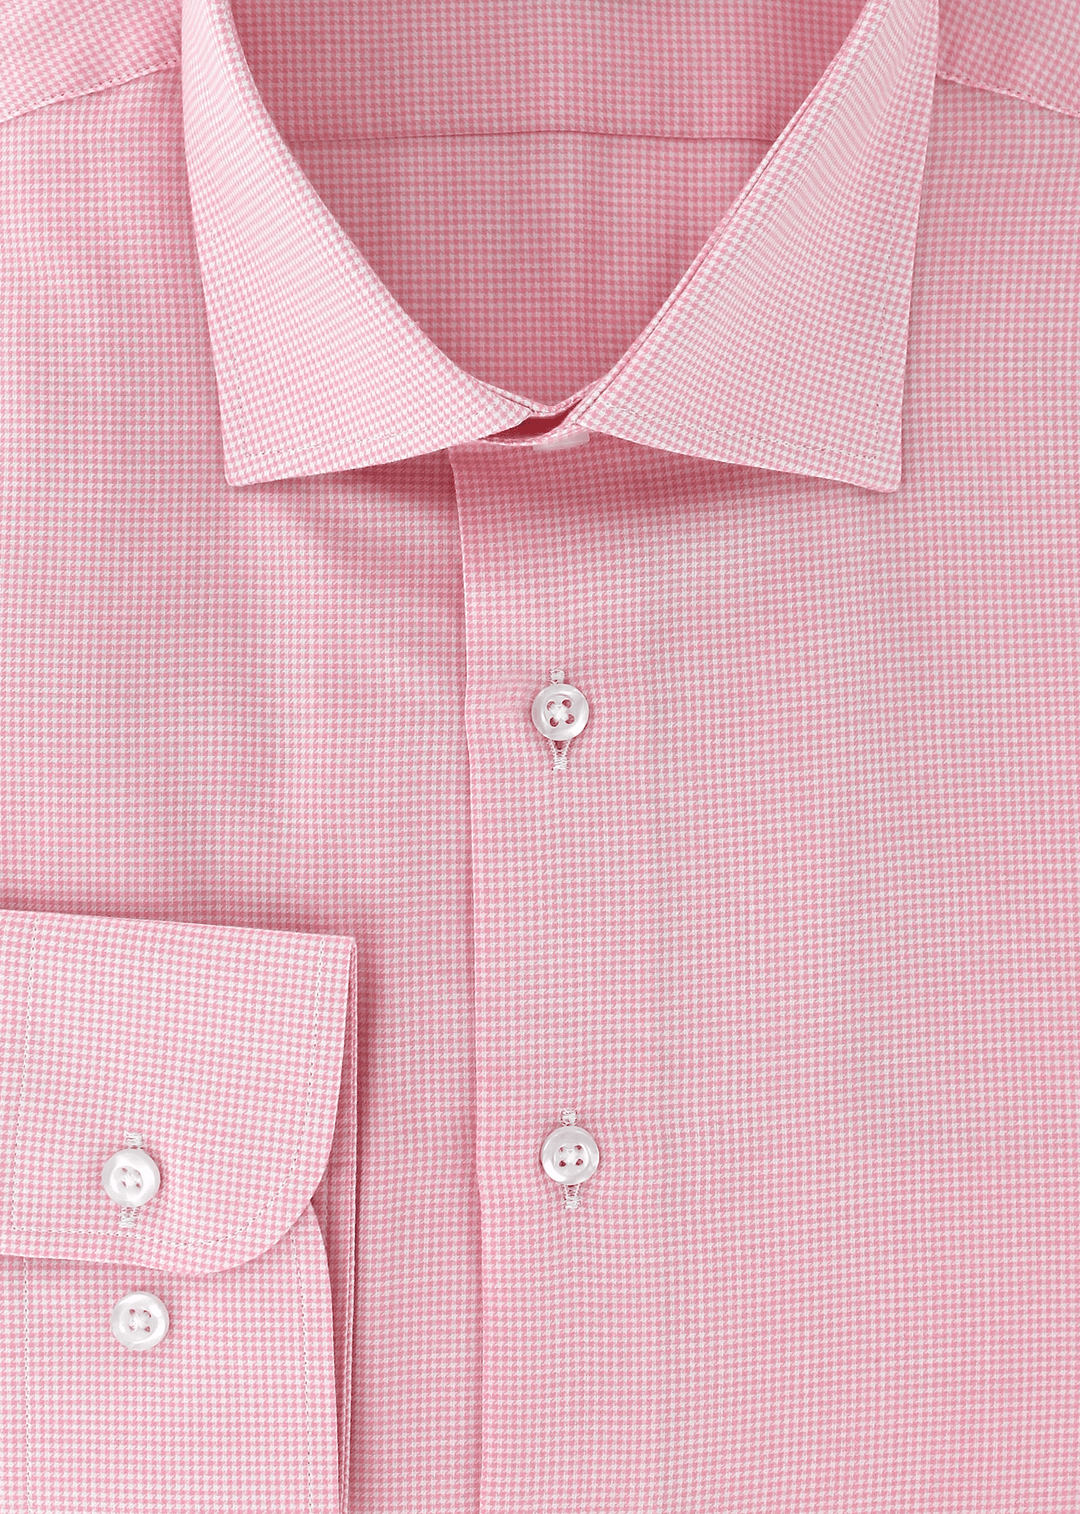 Chemise cintrée rose à motifs pied-de-poule | Cotton Park